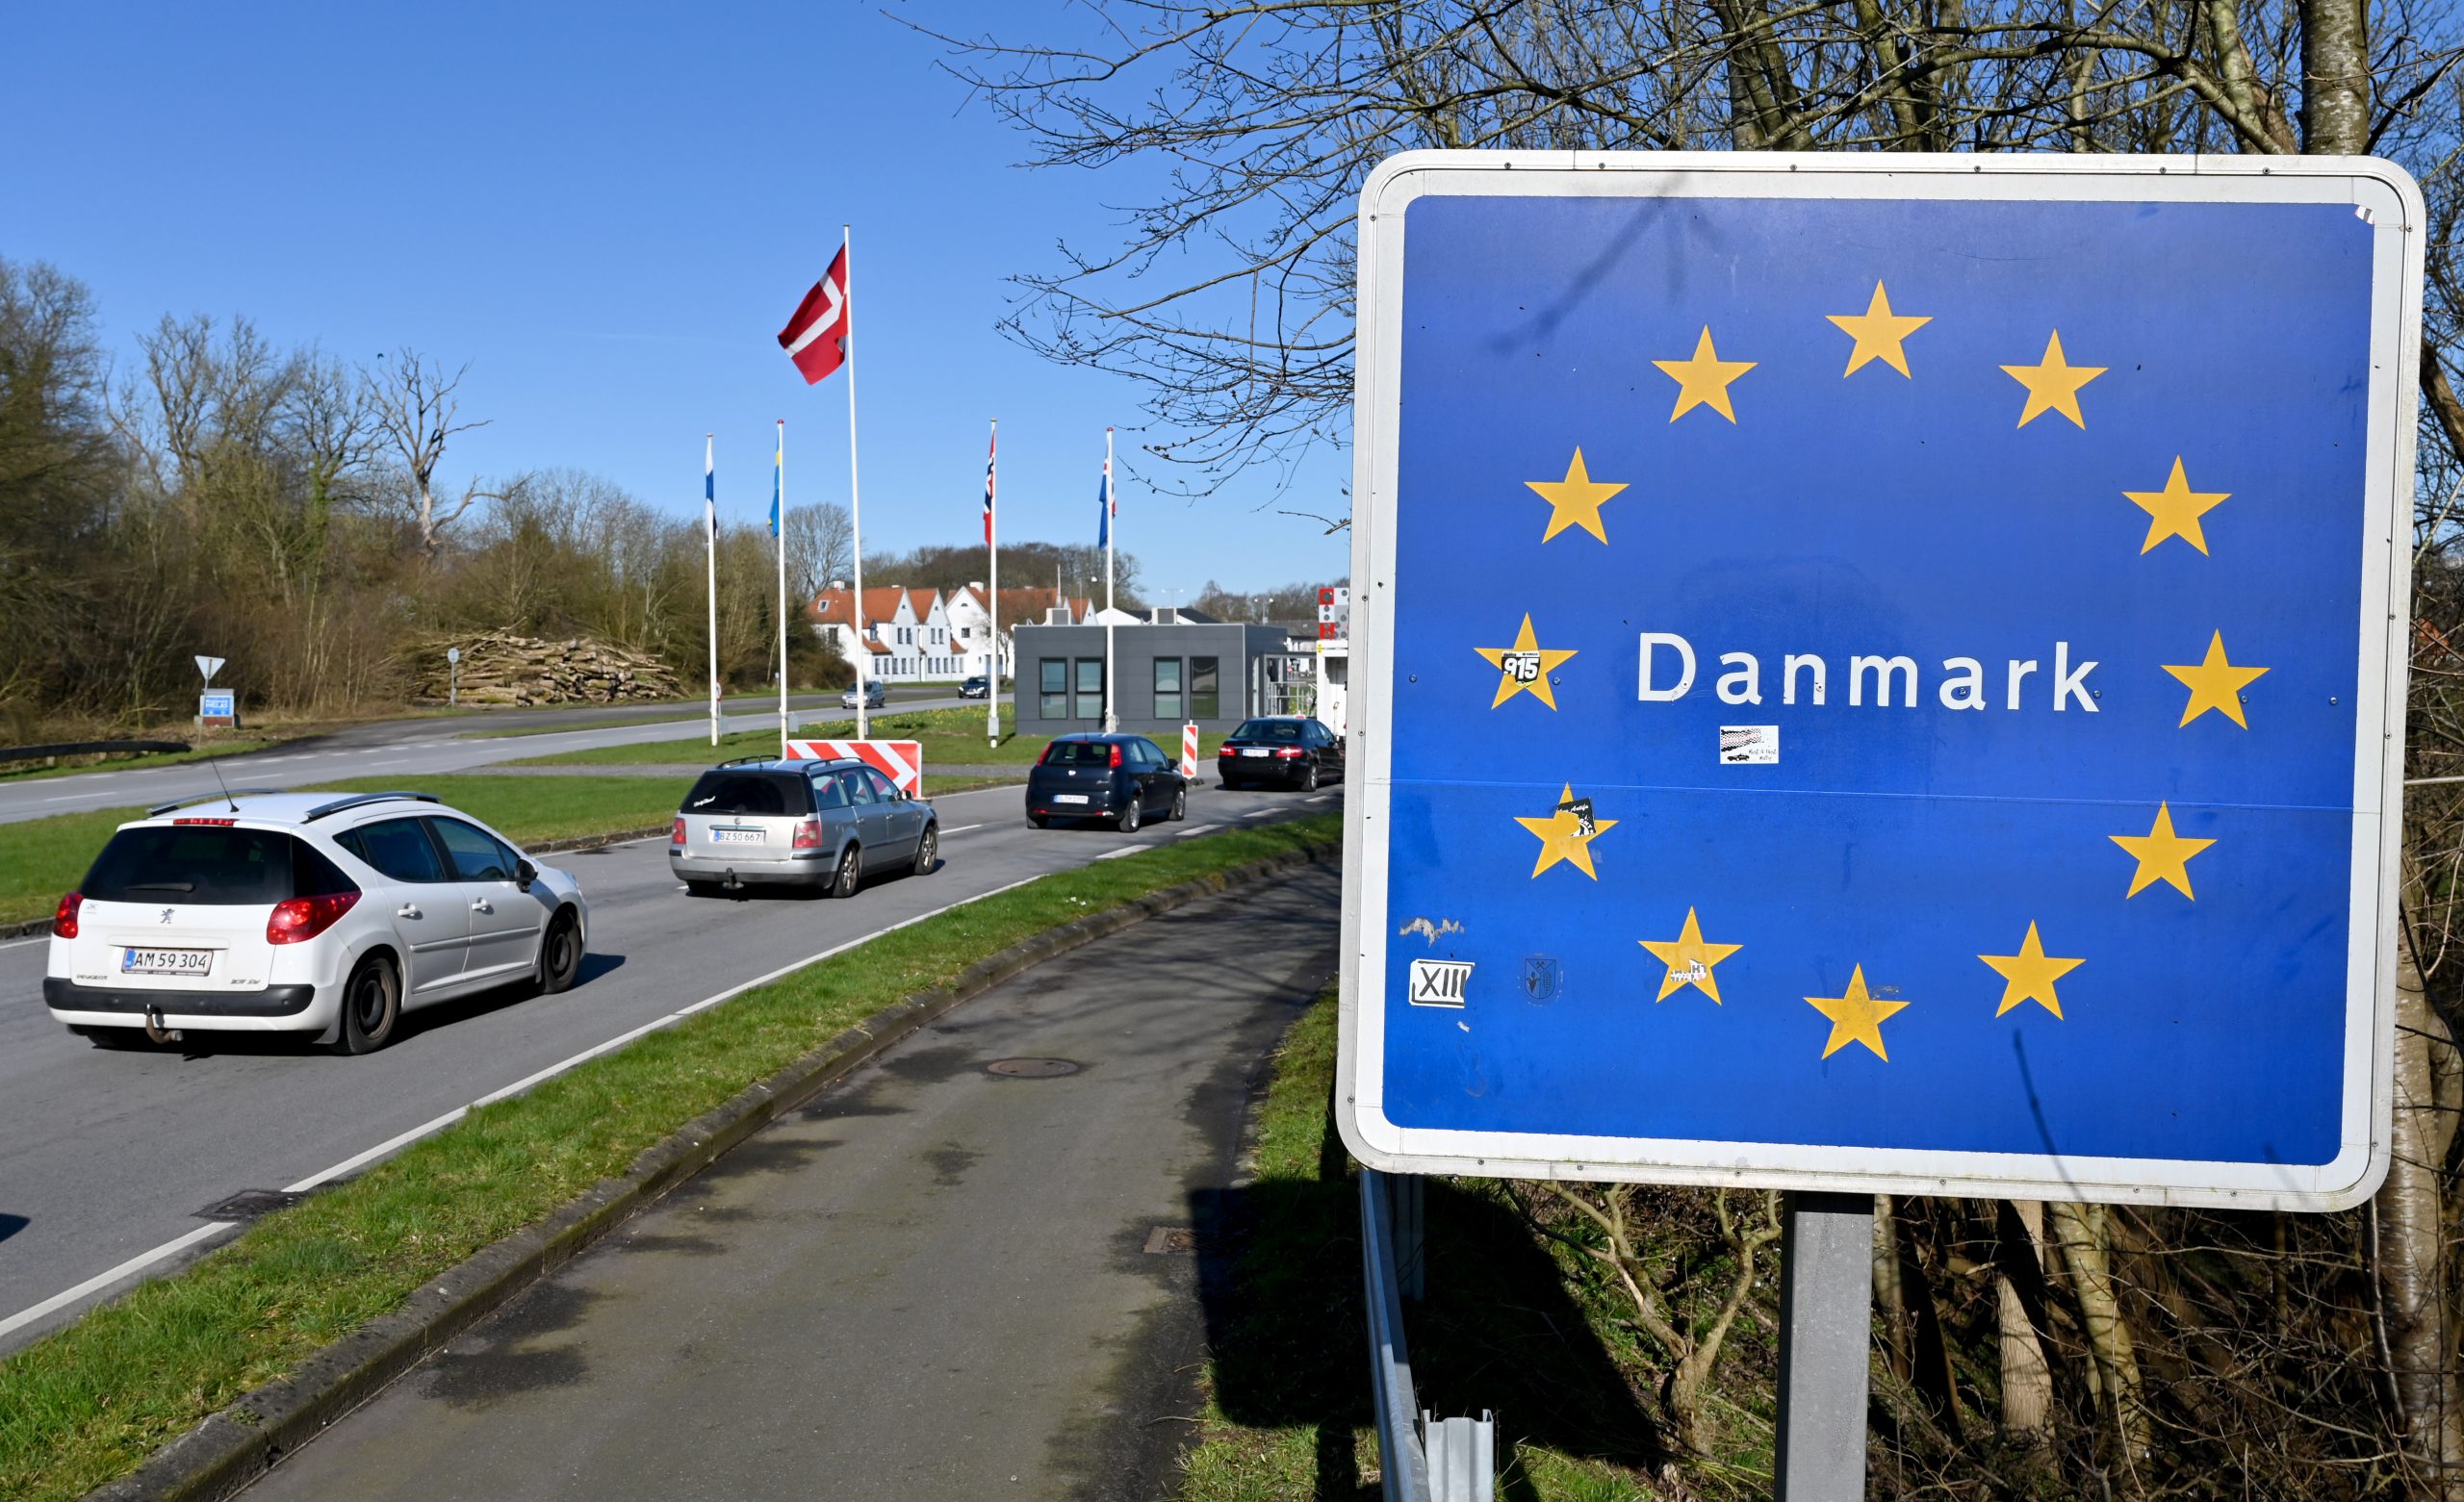 Urlaub trotz Omikron? Einige Deutsche wollen über Weihnachten verreisen. Das gilt jetzt in Dänemark, Österreich und der Schweiz.